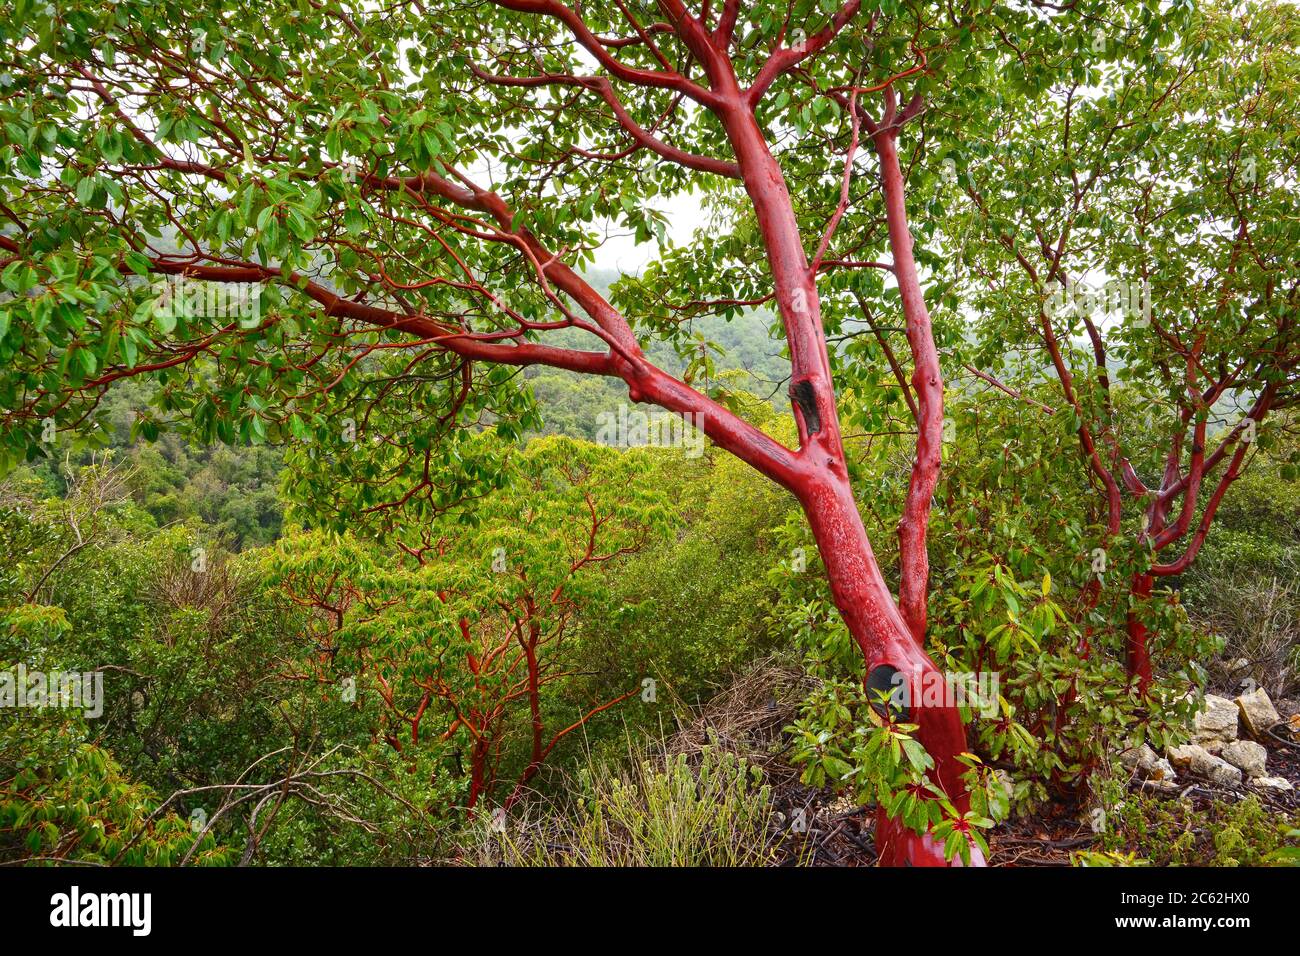 Arbutus tree Stock Photo